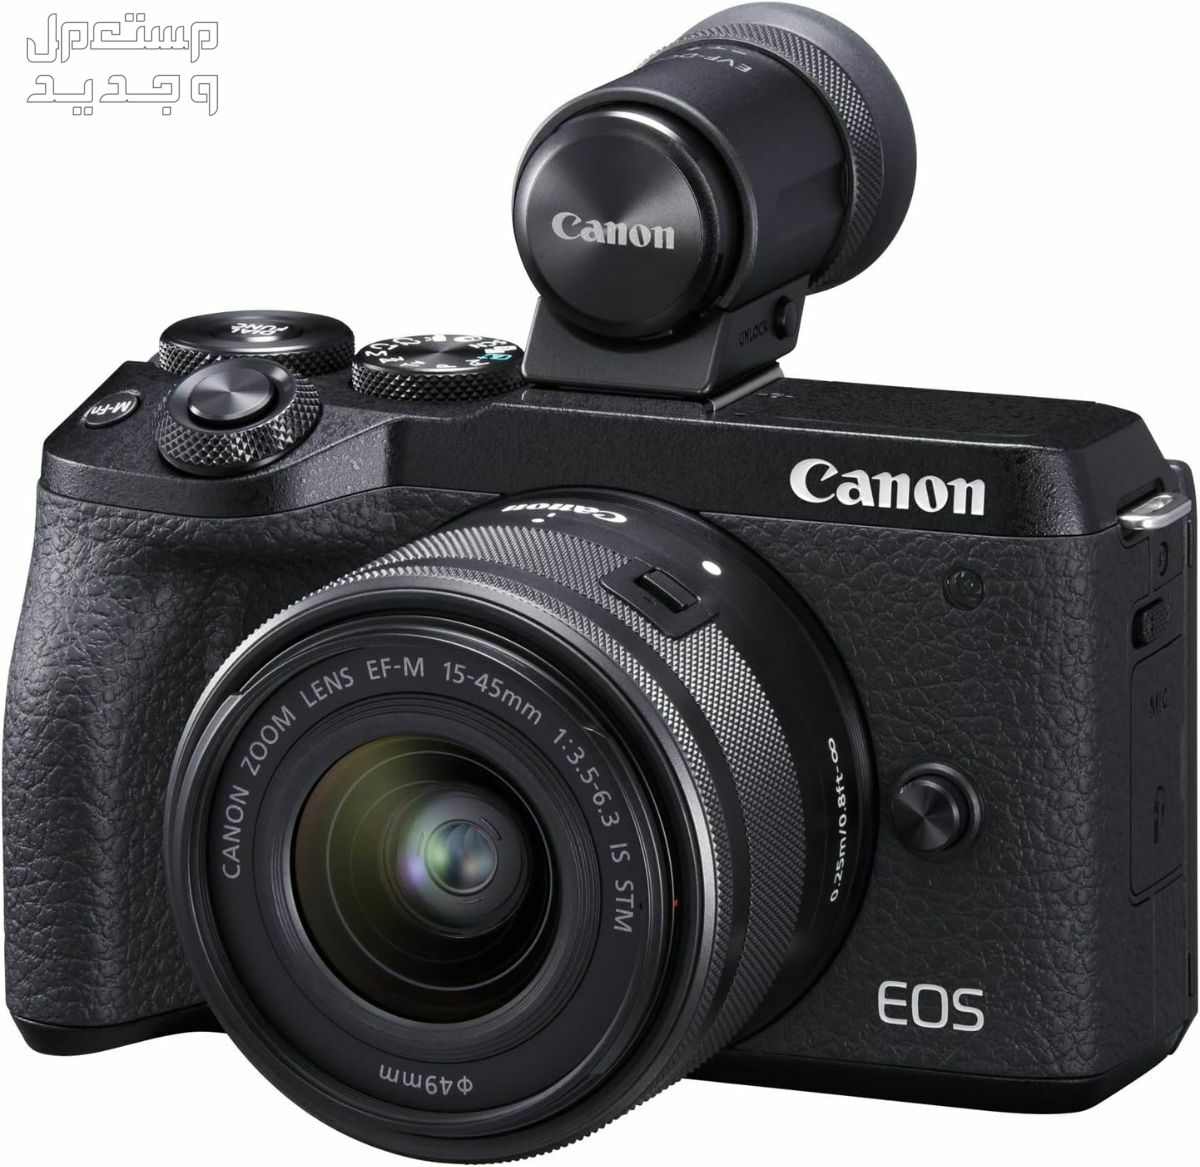 سعر ومميزات ومواصفات أرخص 5 كاميرات تصوير من كانون في العراق كاميرا Canon EOS M6 Mark II